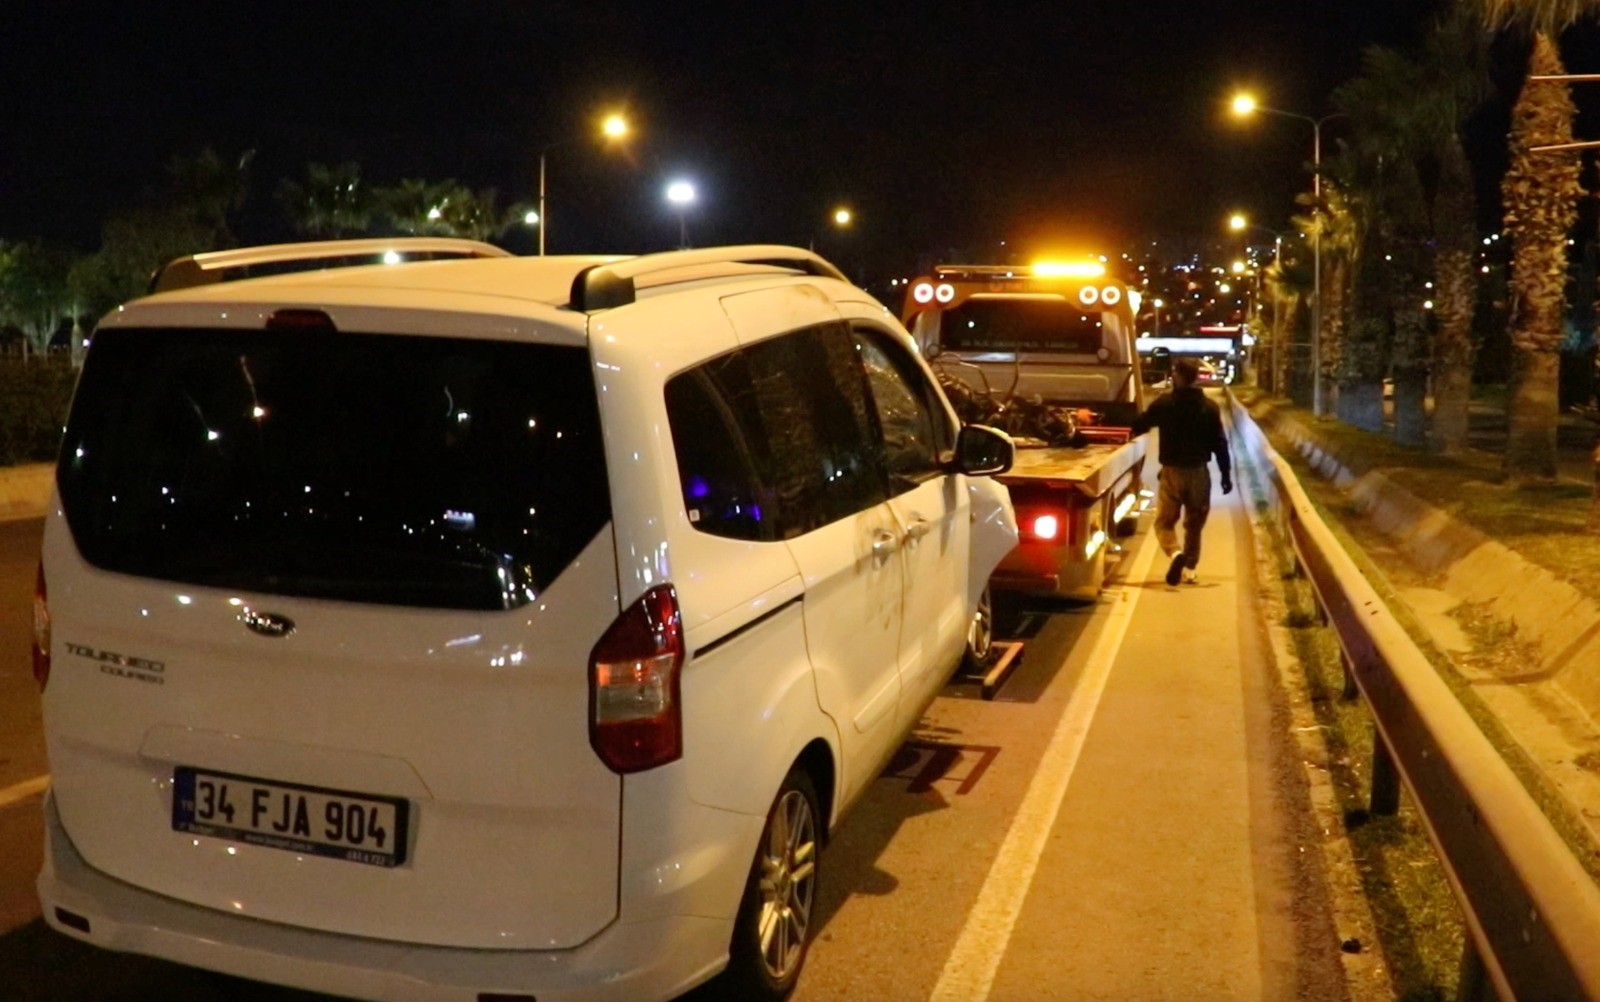 İzmir’de hafif ticari araç ile motosiklet çarpıştı: 1 ölü